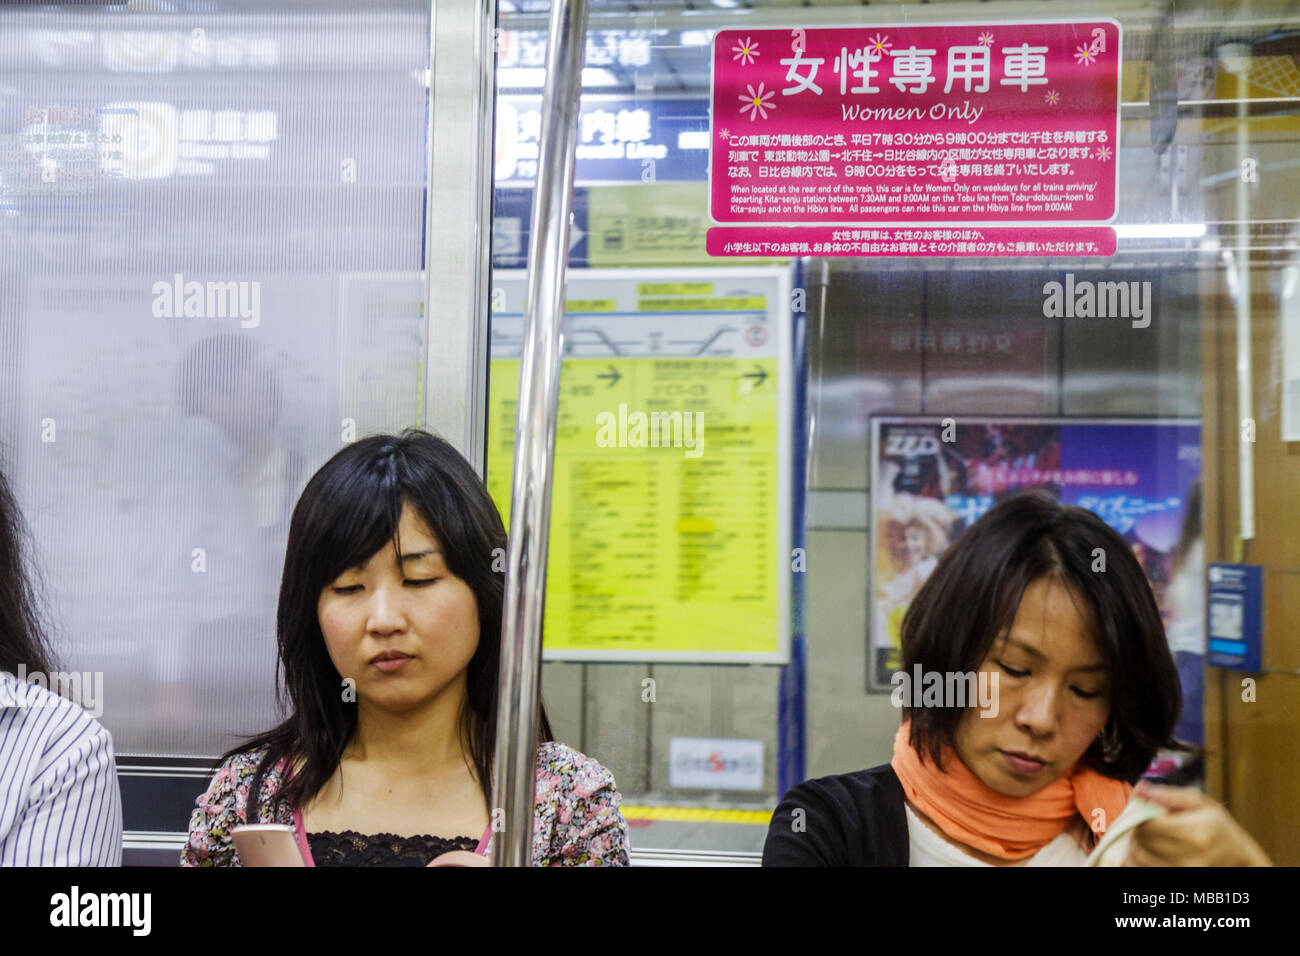 Tokio Japan, Hibiya, Hibiya Line Station, nur für Frauen, asiatisches Orientalisch, Frau weibliche Erwachsene Erwachsene Erwachsene, Kanji, Hiragana, Zeichen, Symbole, Japanisch und Englisch Stockfoto